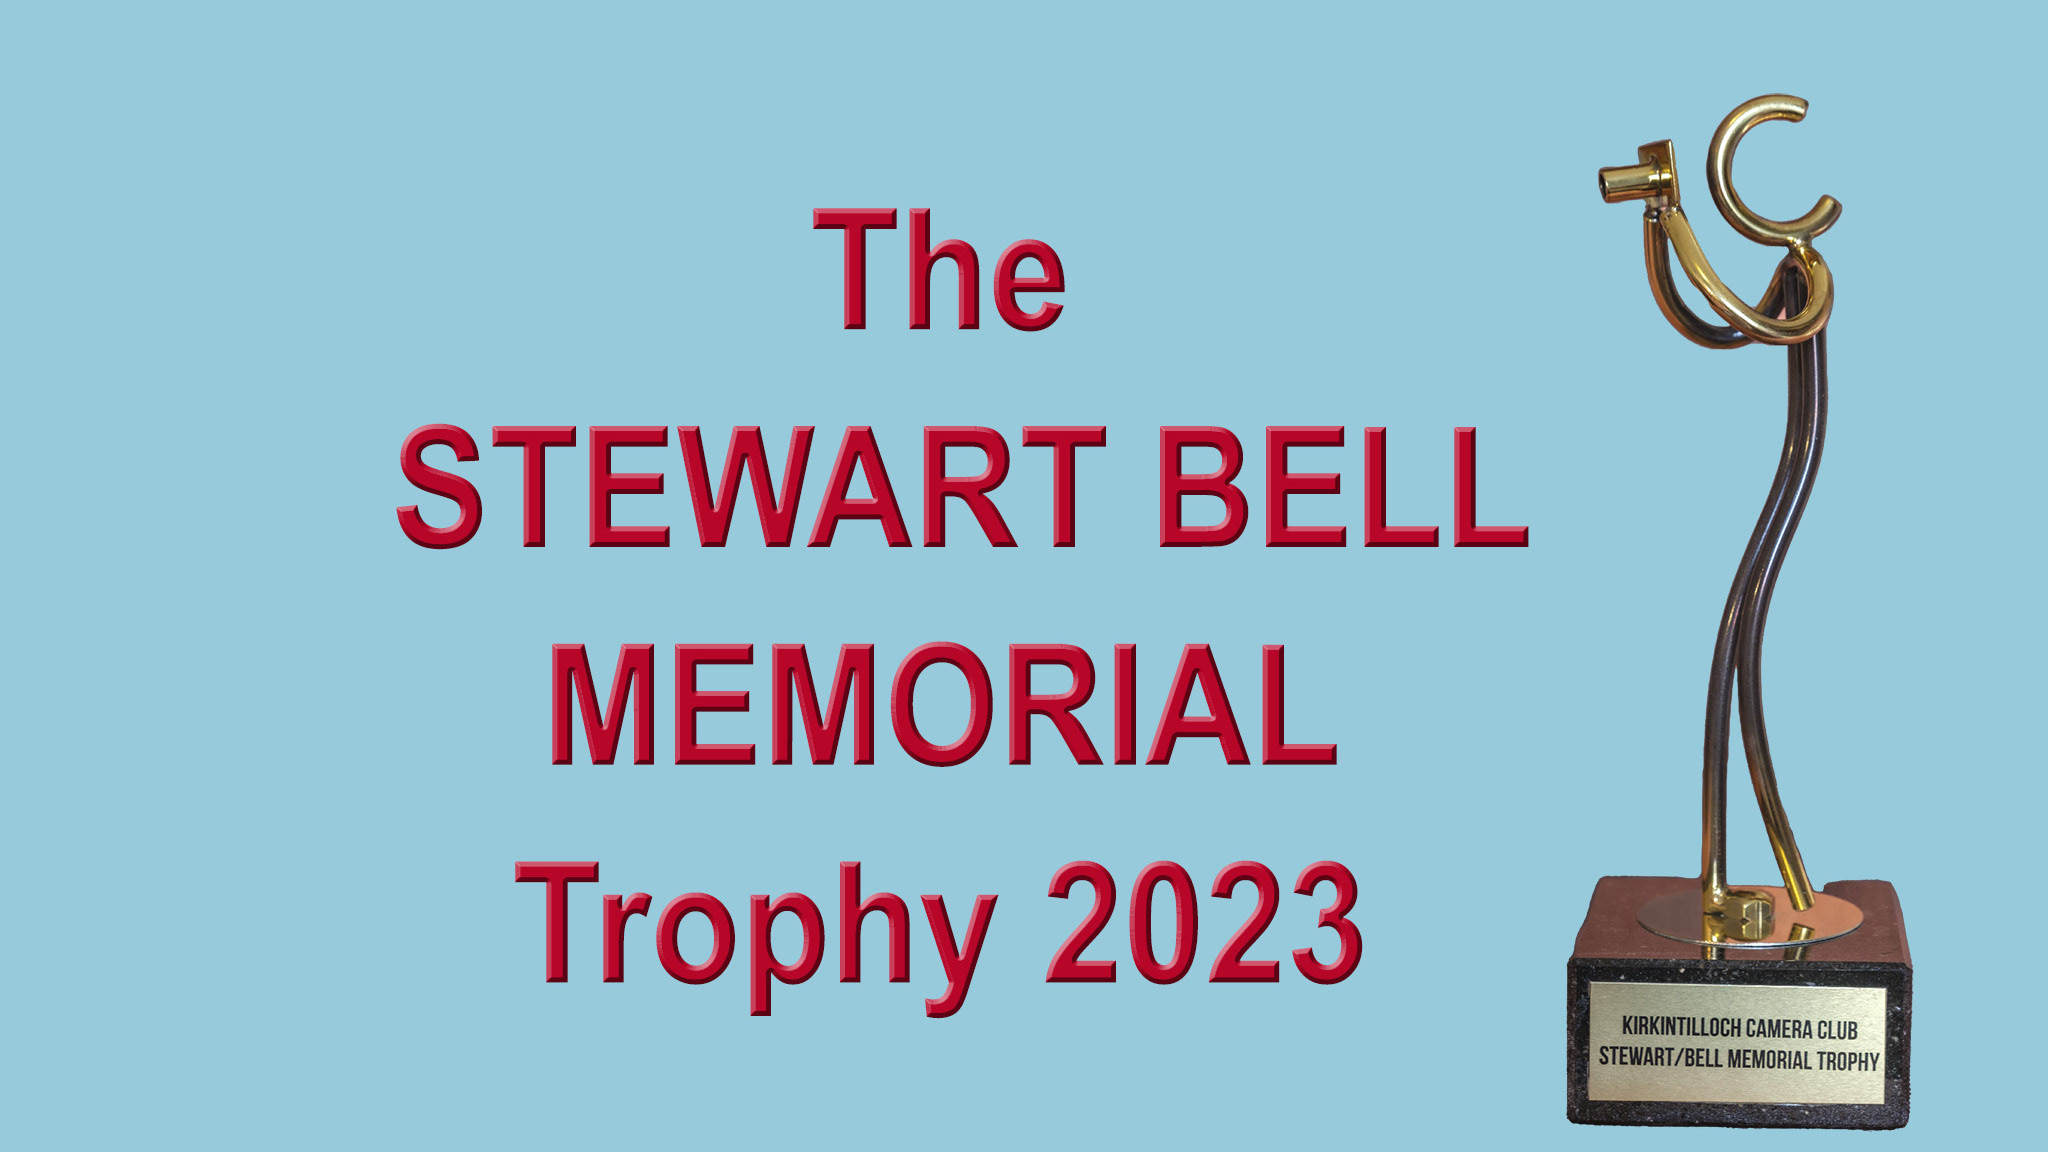 Kirkintilloch Camera Club Stewart Bell Memorial Trophy 2023